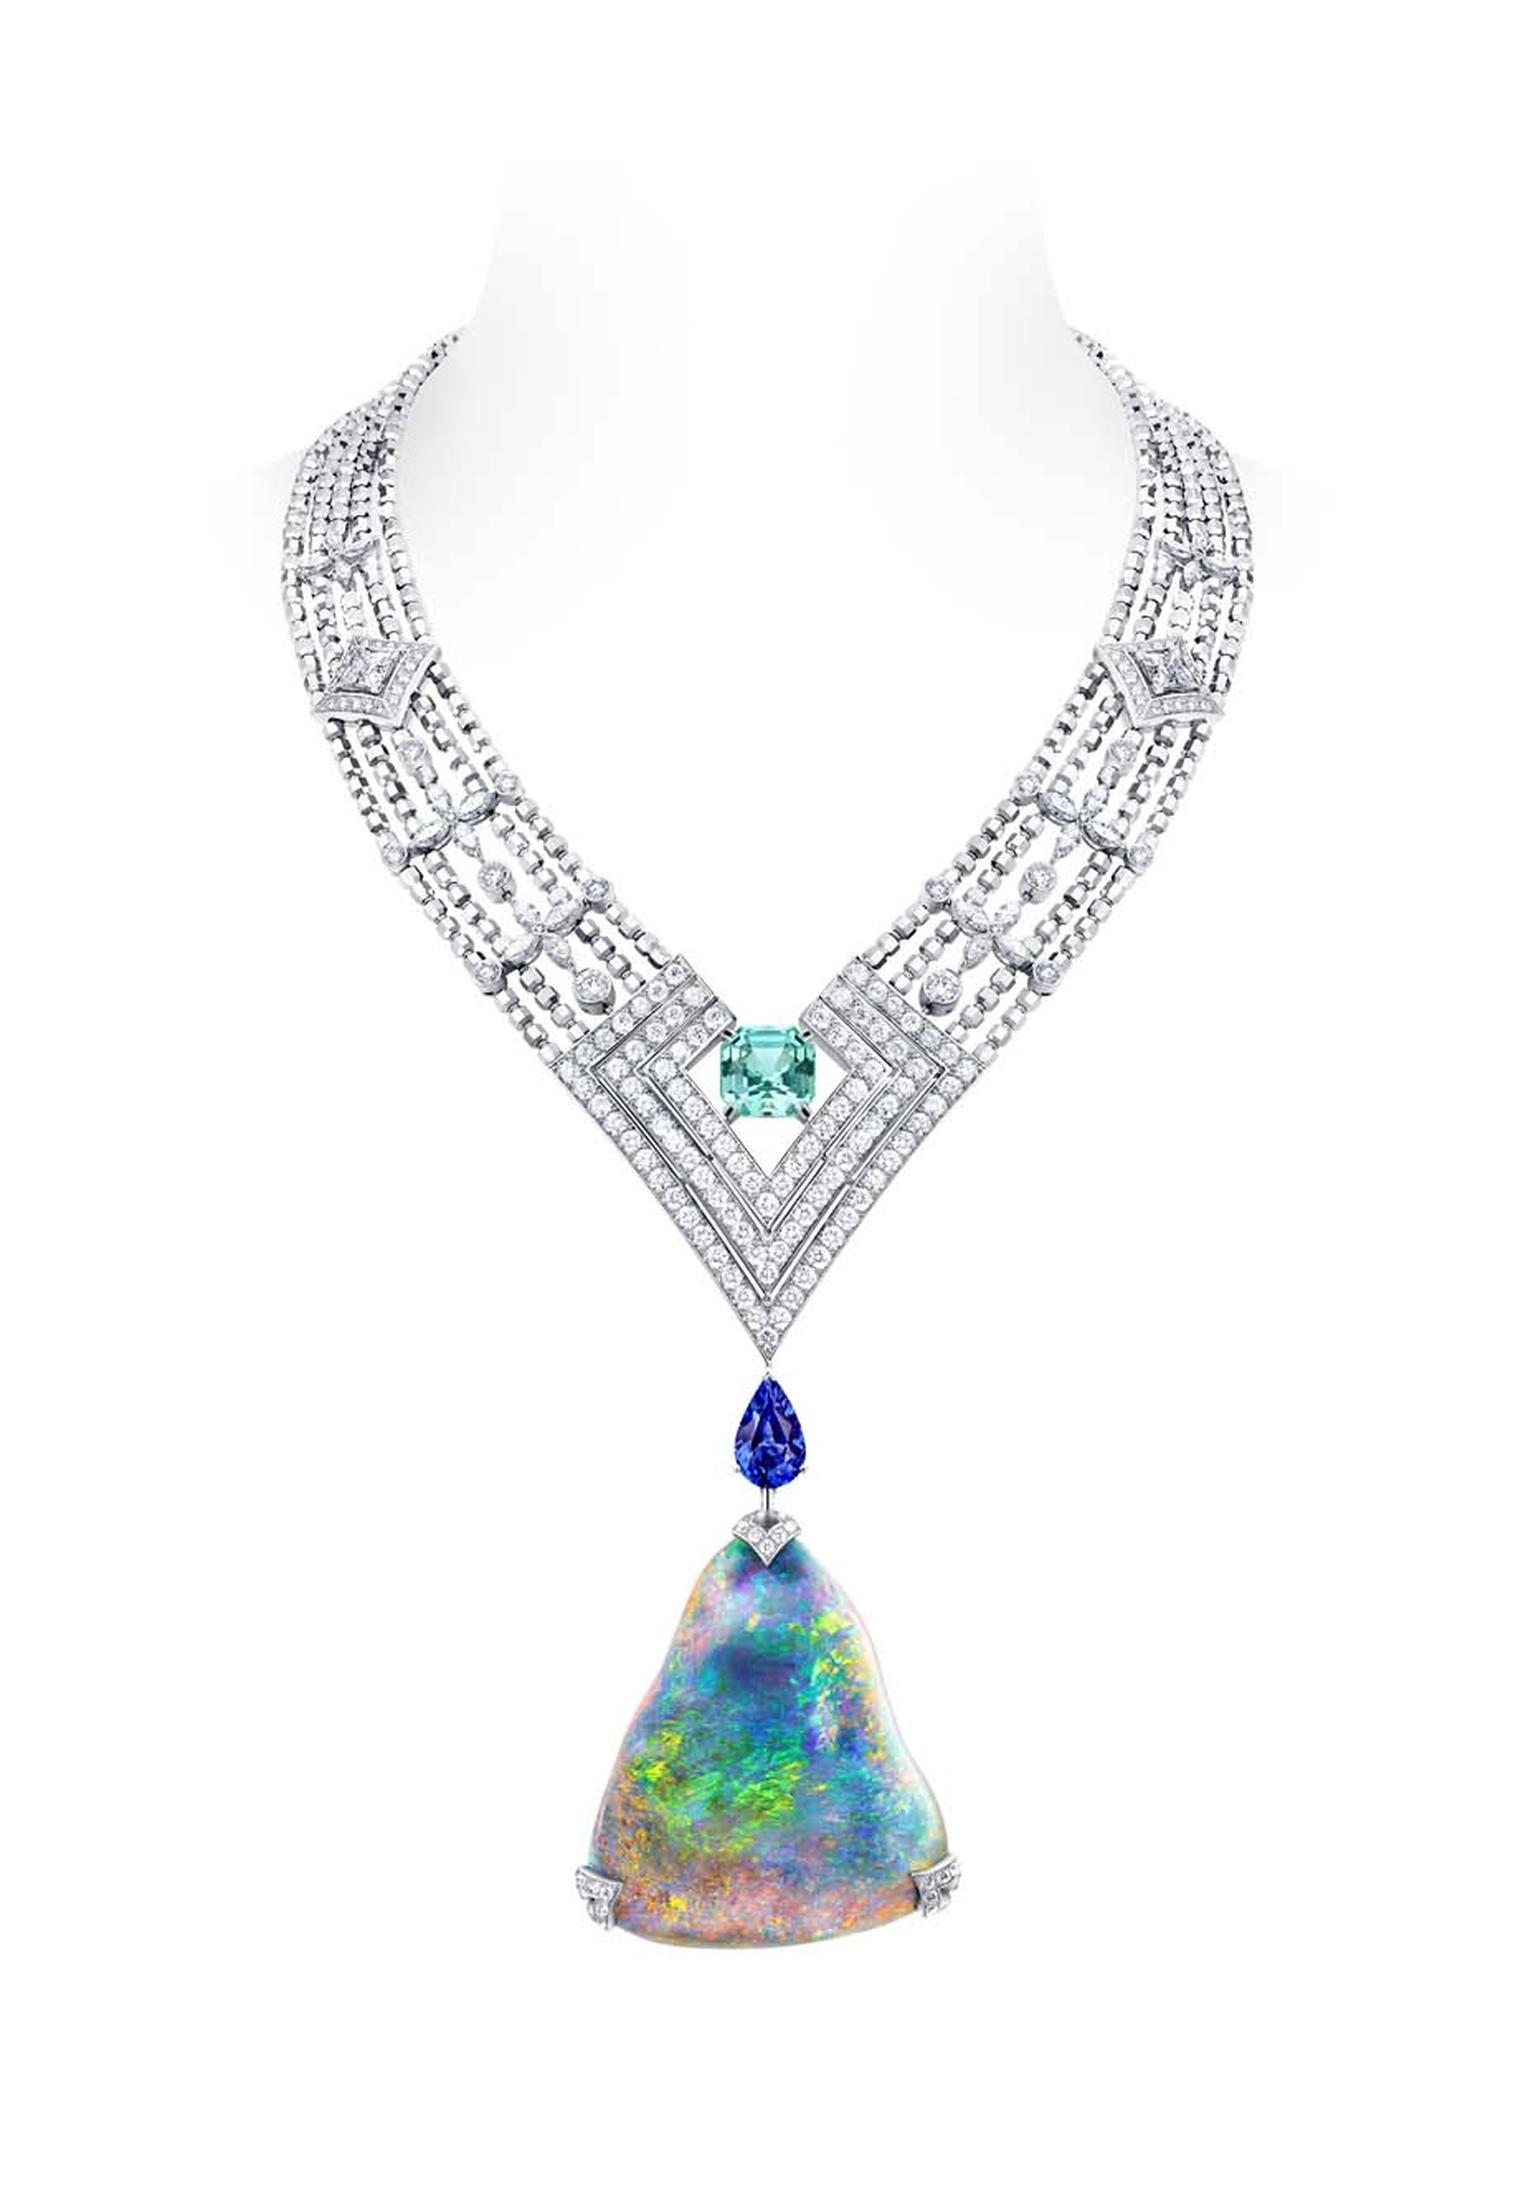 Louis Vuitton Acte V Genesis necklace featuring a 87.92ct Australian black opal and Vuitton's signature star-cut diamonds.